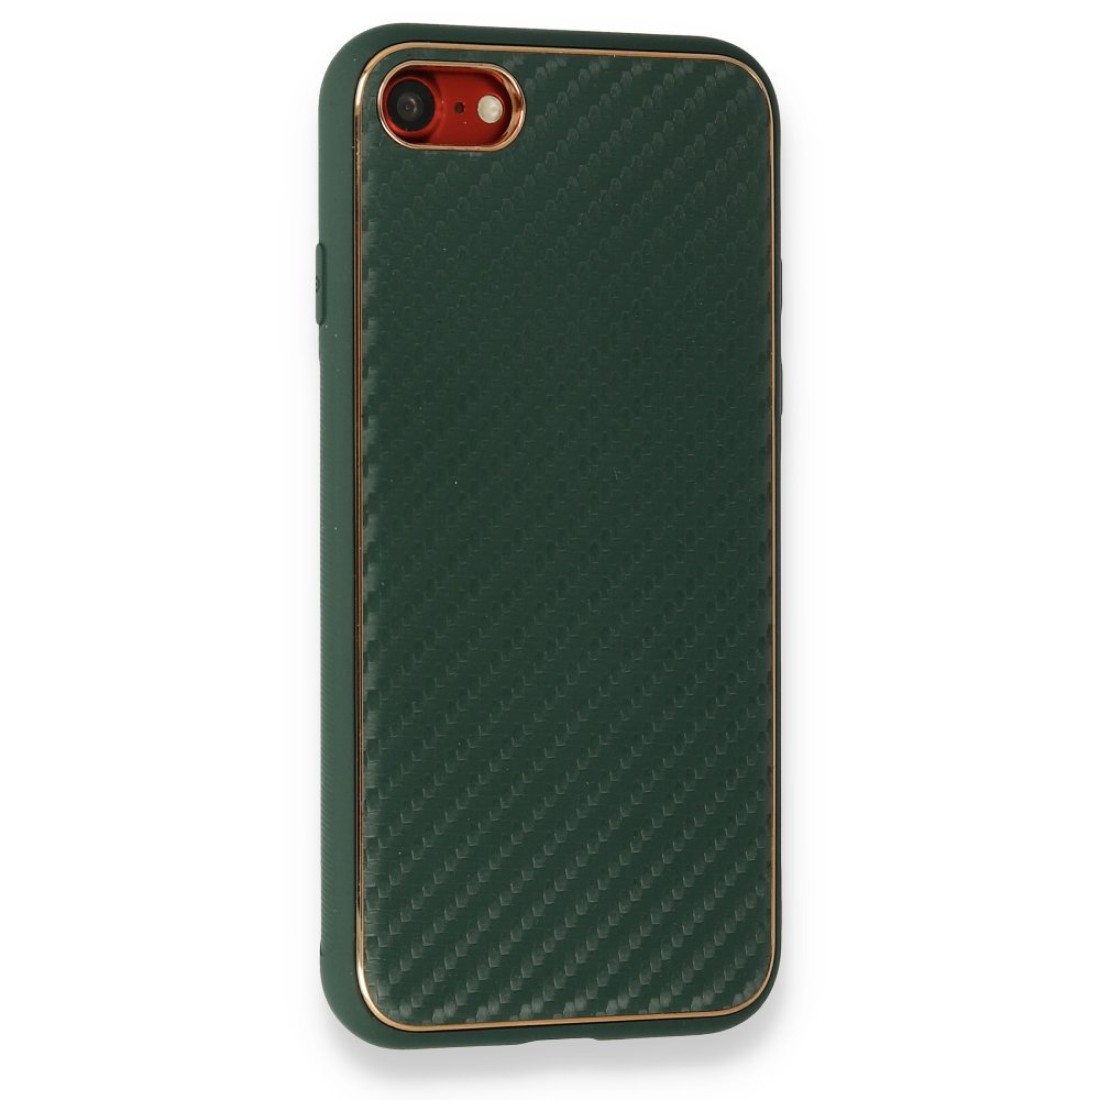 Apple iPhone 7 Kılıf Coco Karbon Silikon - Yeşil